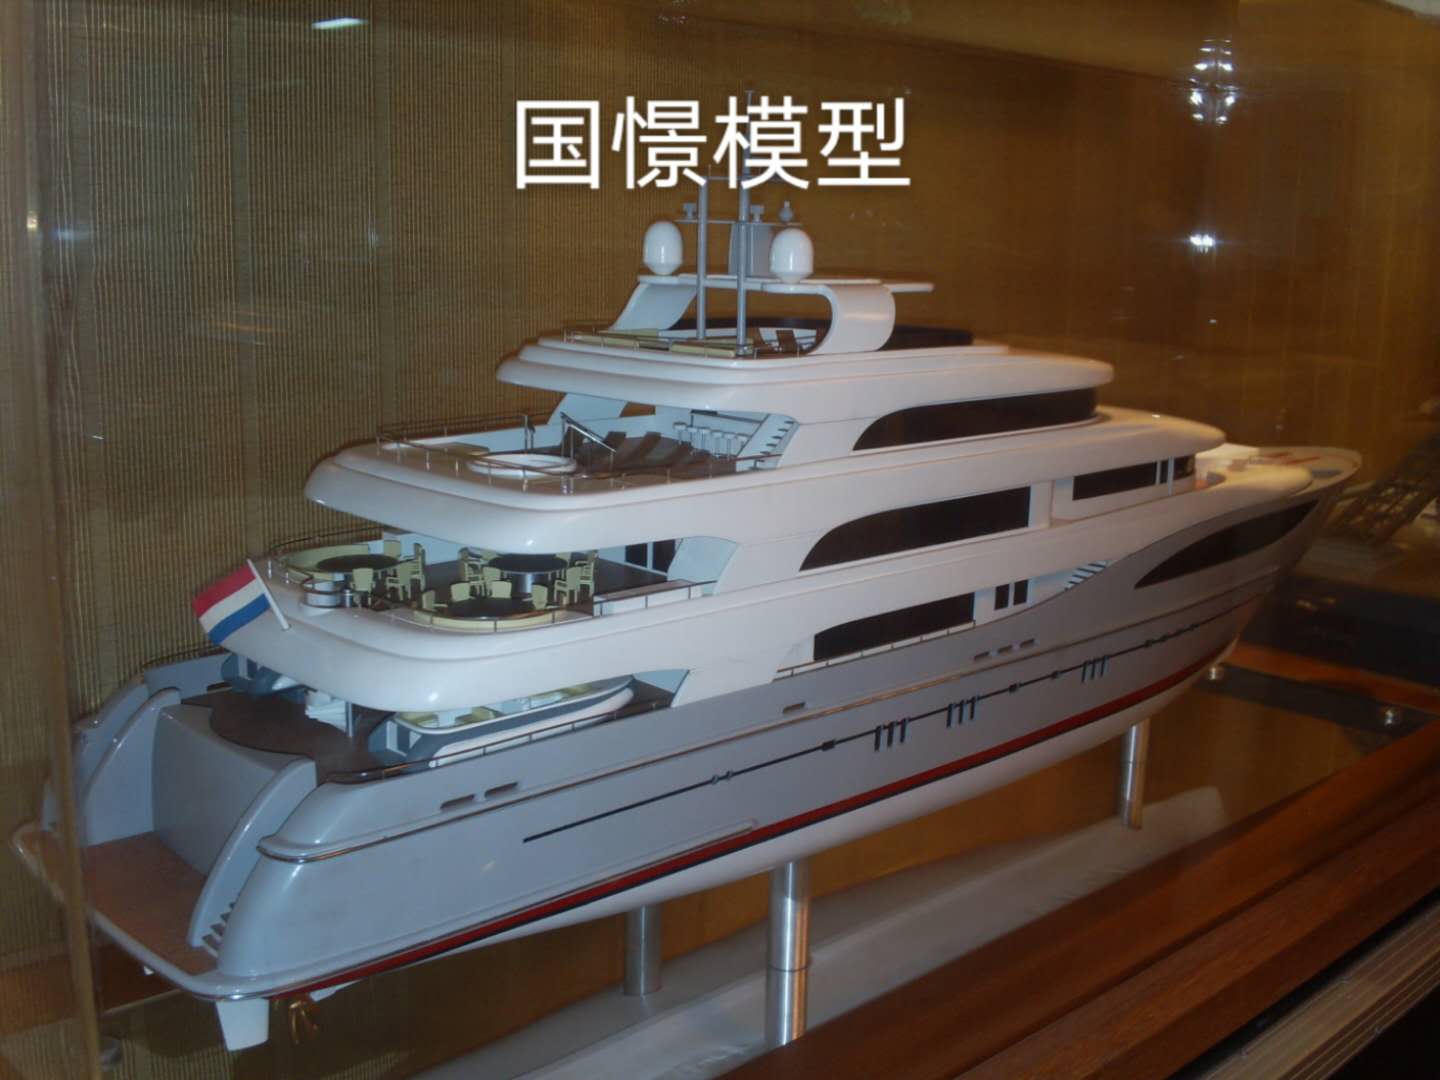 柯坪县船舶模型